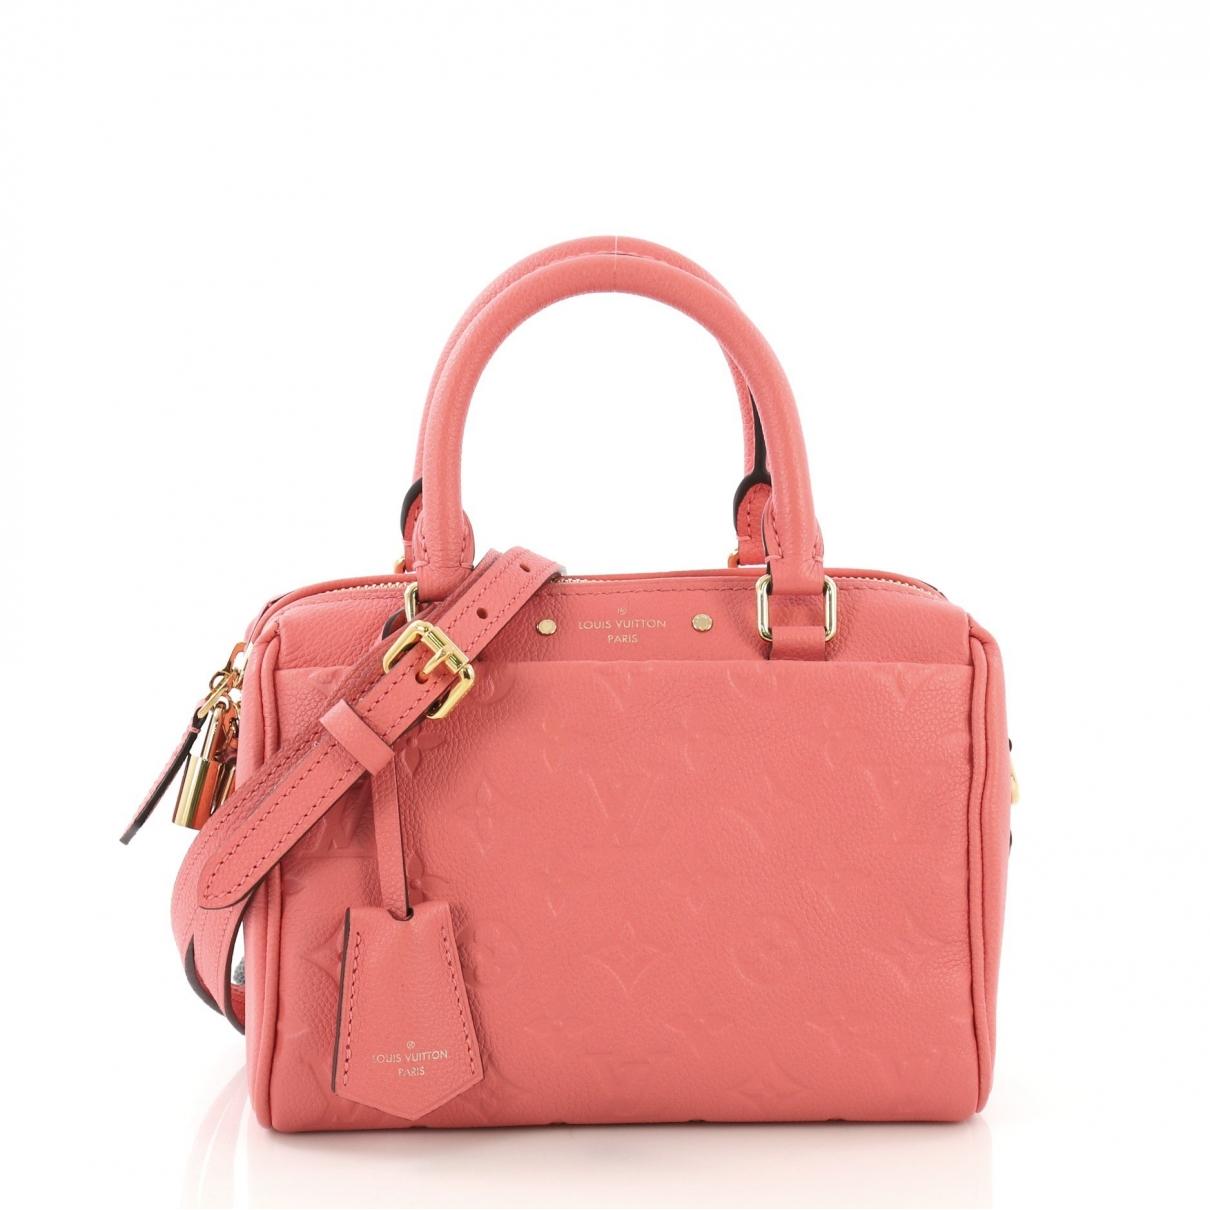 Lyst - Louis Vuitton Speedy Pink Leather Handbag in Pink